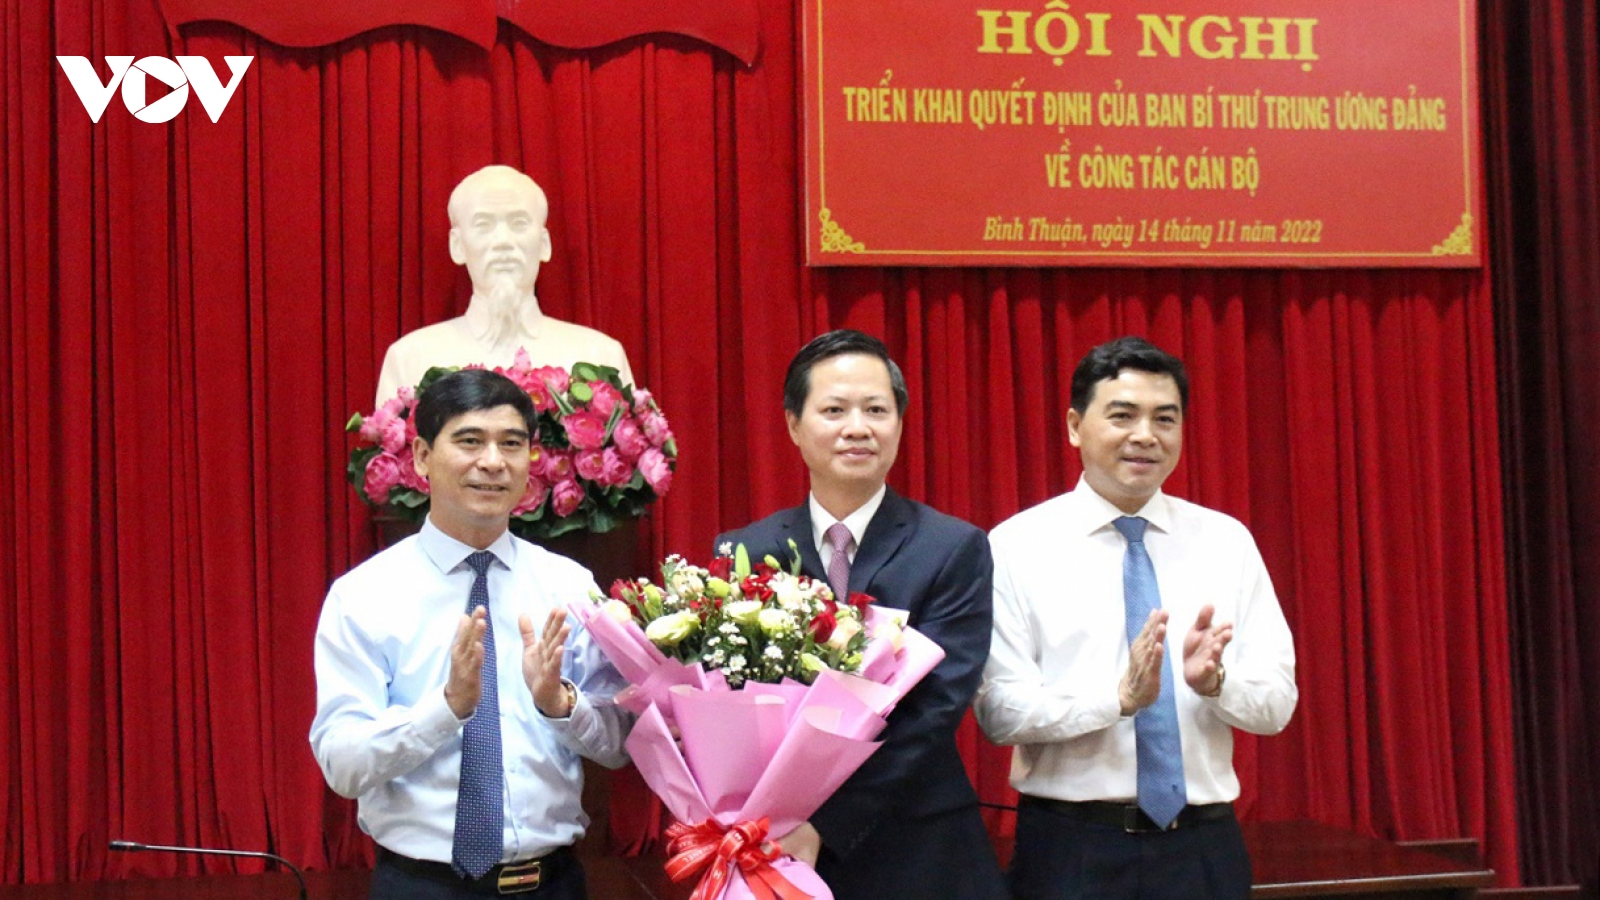 Ông Đoàn Anh Dũng được chỉ định làm Phó Bí thư Tỉnh uỷ Bình Thuận